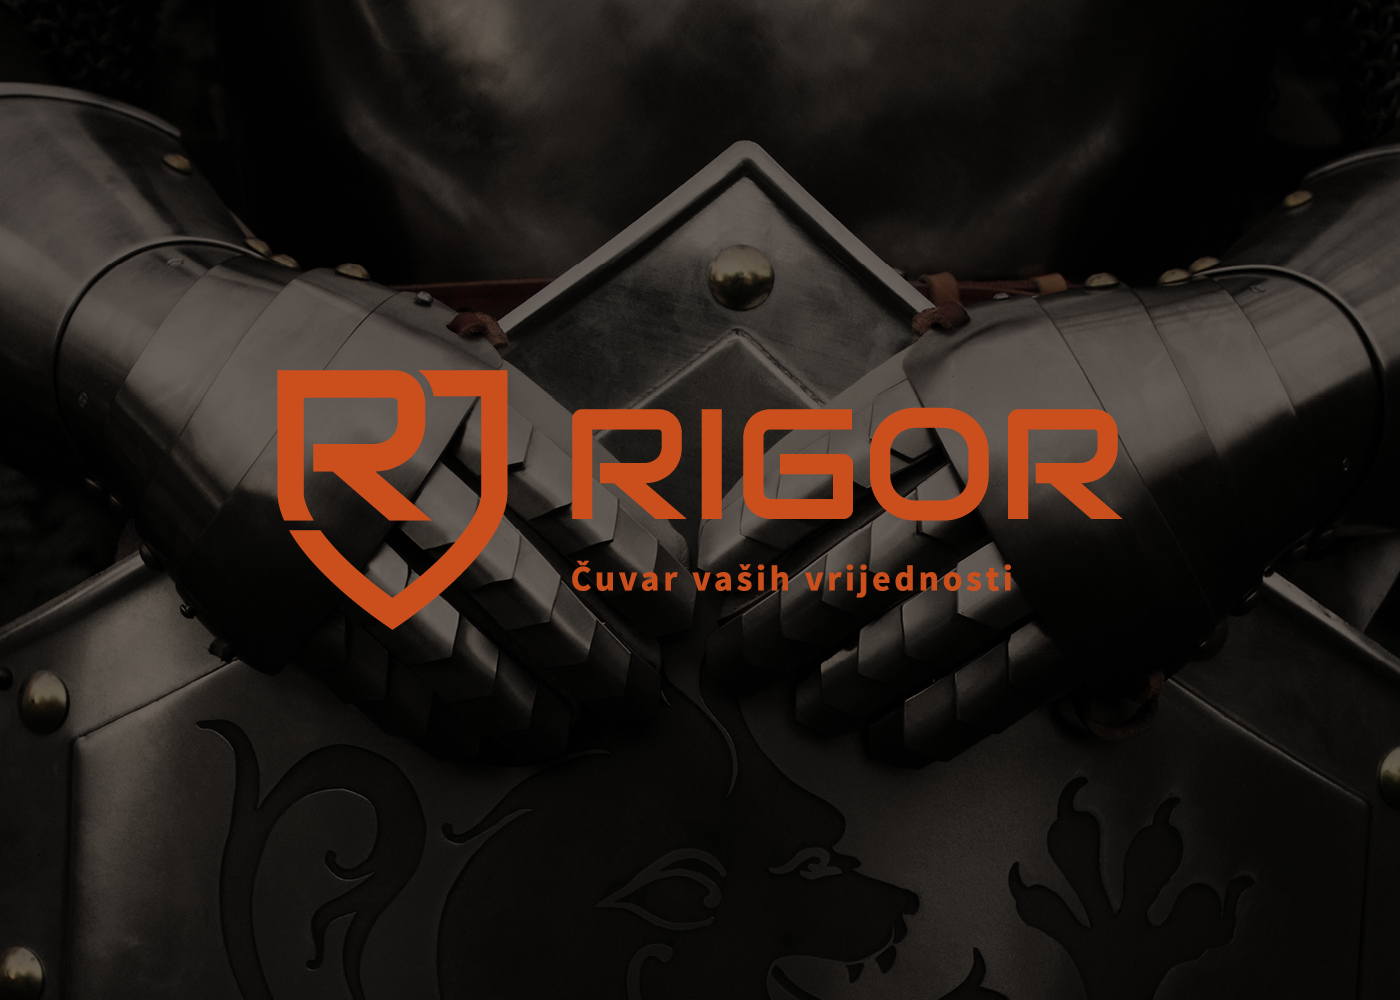 Vizualni identitet tvrtke Rigor